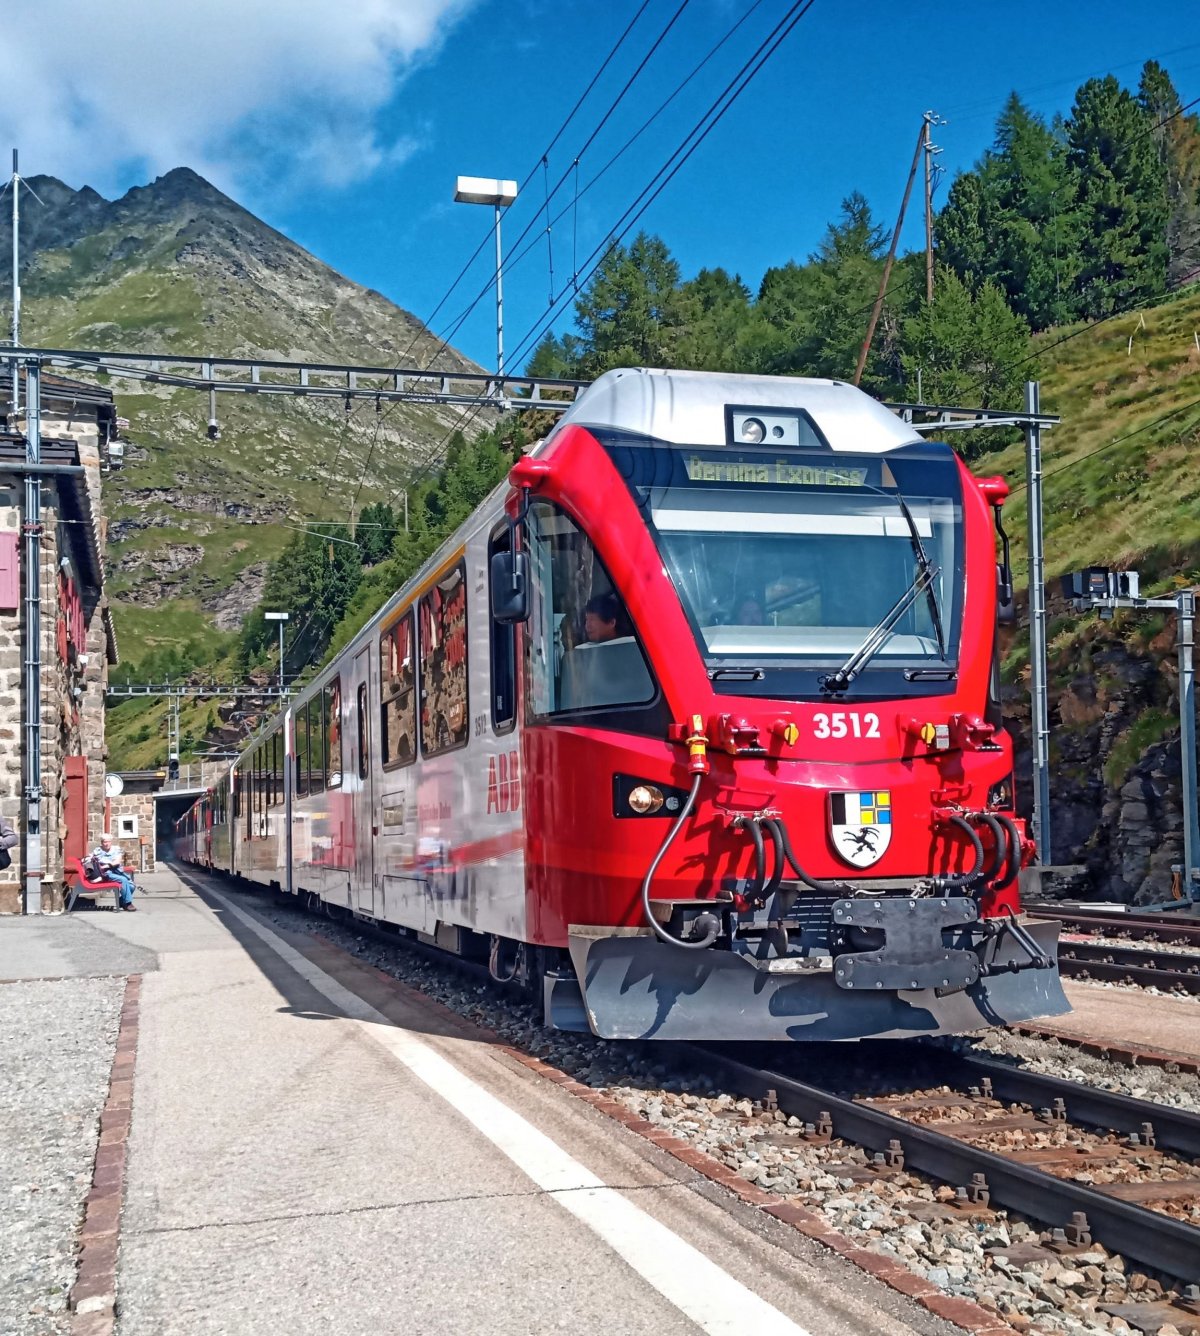 Alp Grüm a souprava známého Bernina Expressu 